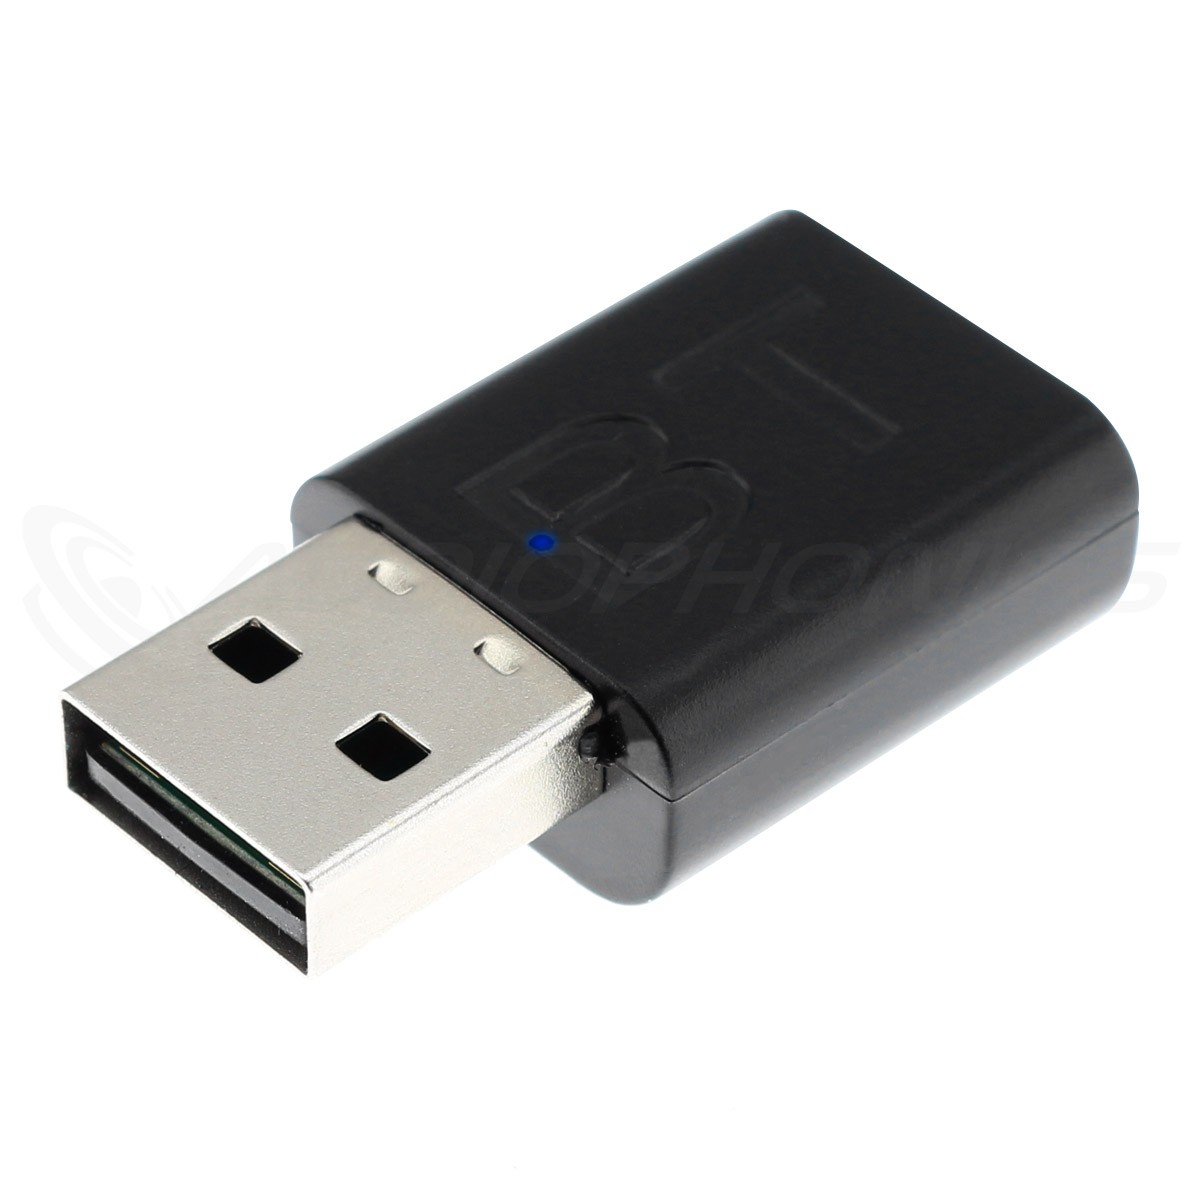 Adaptateur Bluetooth 5.0 Adaptateur Bluetooth sans Fil pour PC/Casque/Haut-parleurs/Clavier/imprimantes Mini USB Bluetooth Dongle Audio émetteur récepteur Prend en Charge Win 7/8/8.1/10 